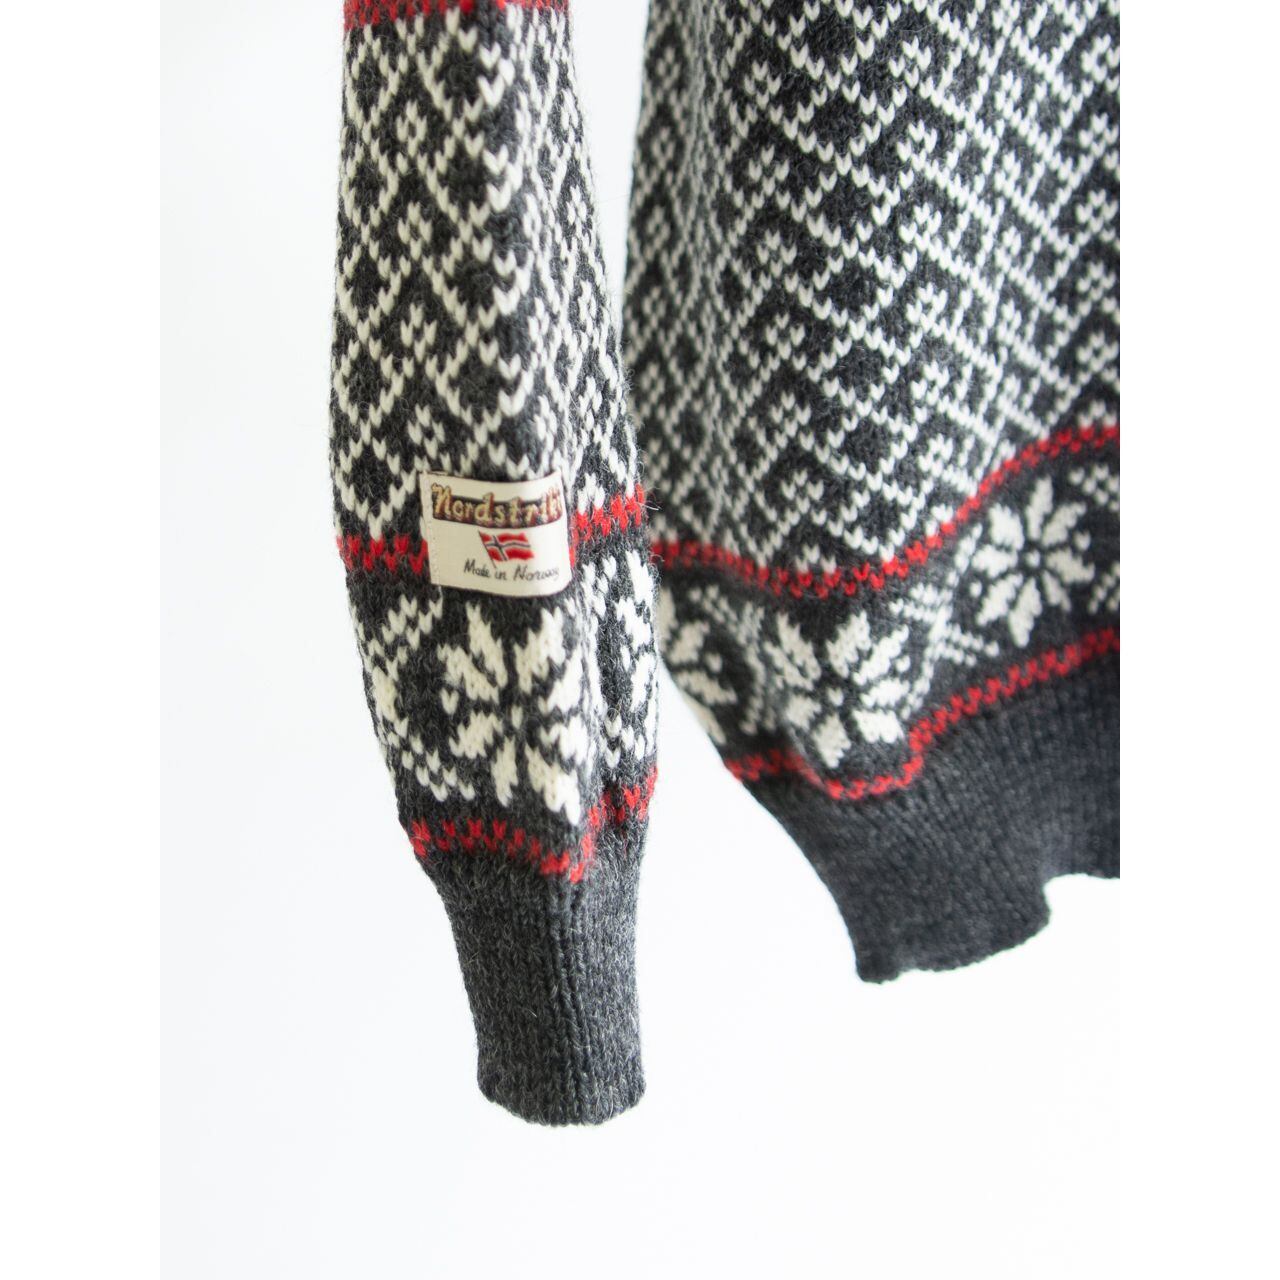 Nordstrikk Dead stock】Made in Norway 100% Wool Nordic Sweater 